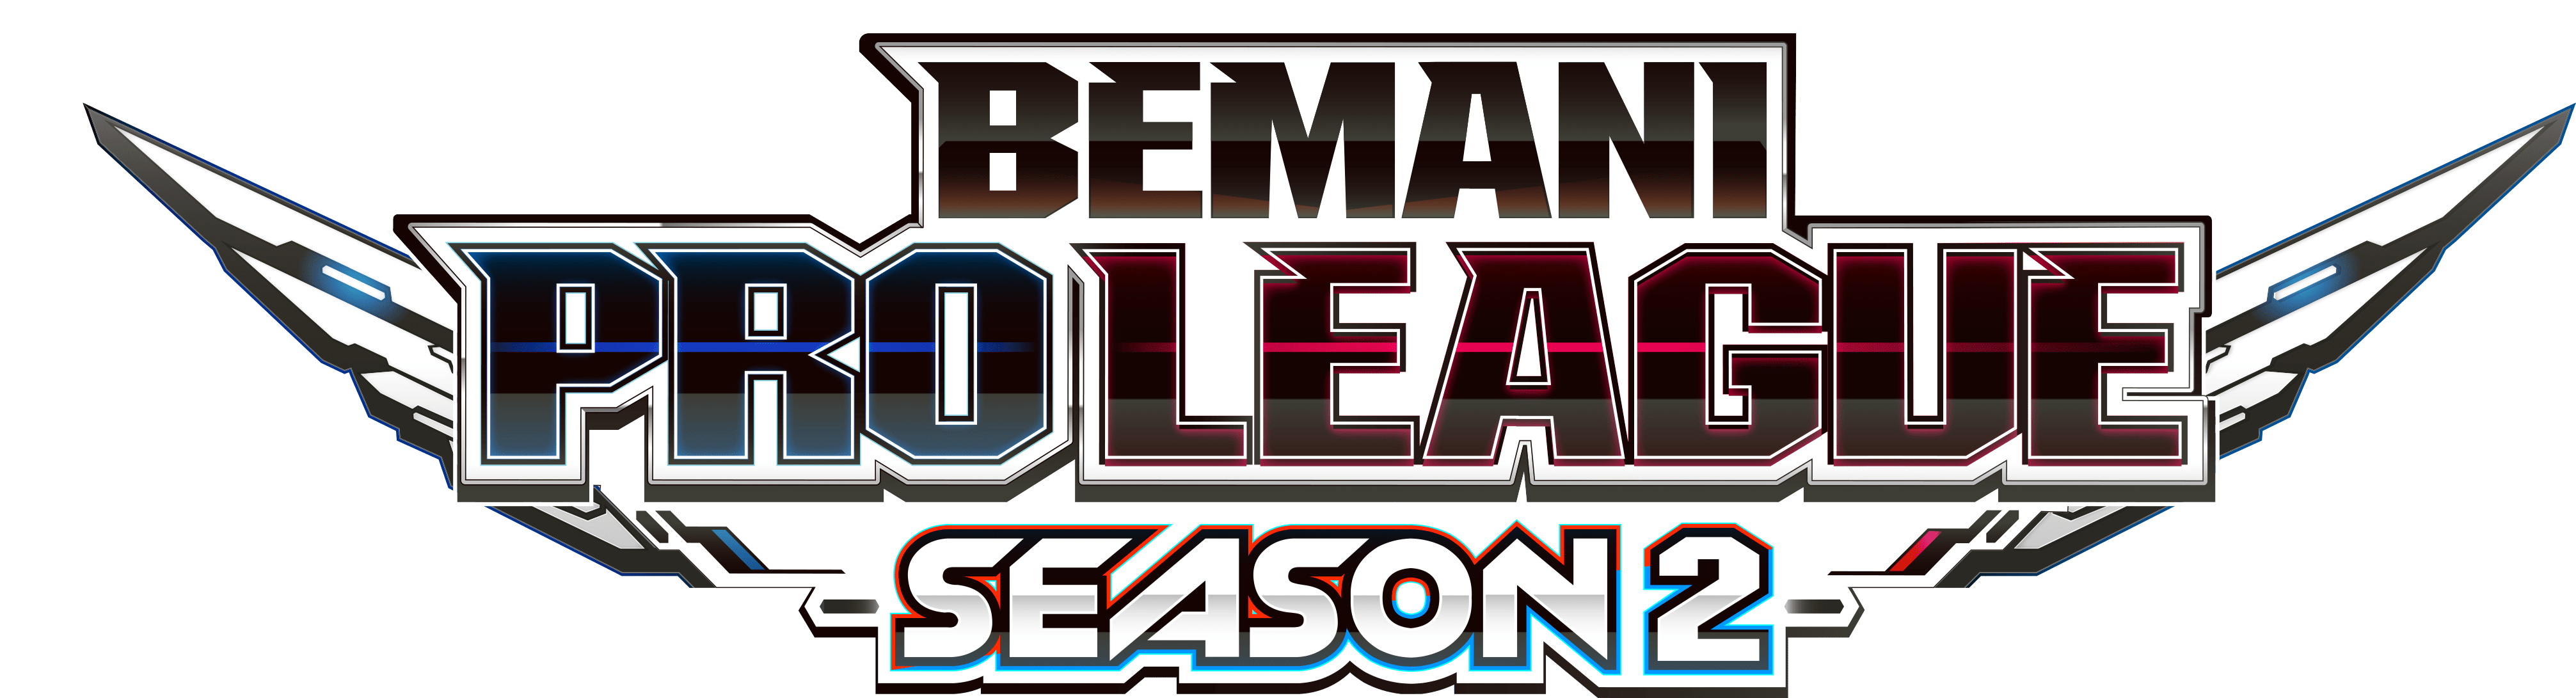 【大会情報】BEMANI PRO LEAGUE SEASON2 レギュラーステージ 第15、16試合【2022年8月17日】